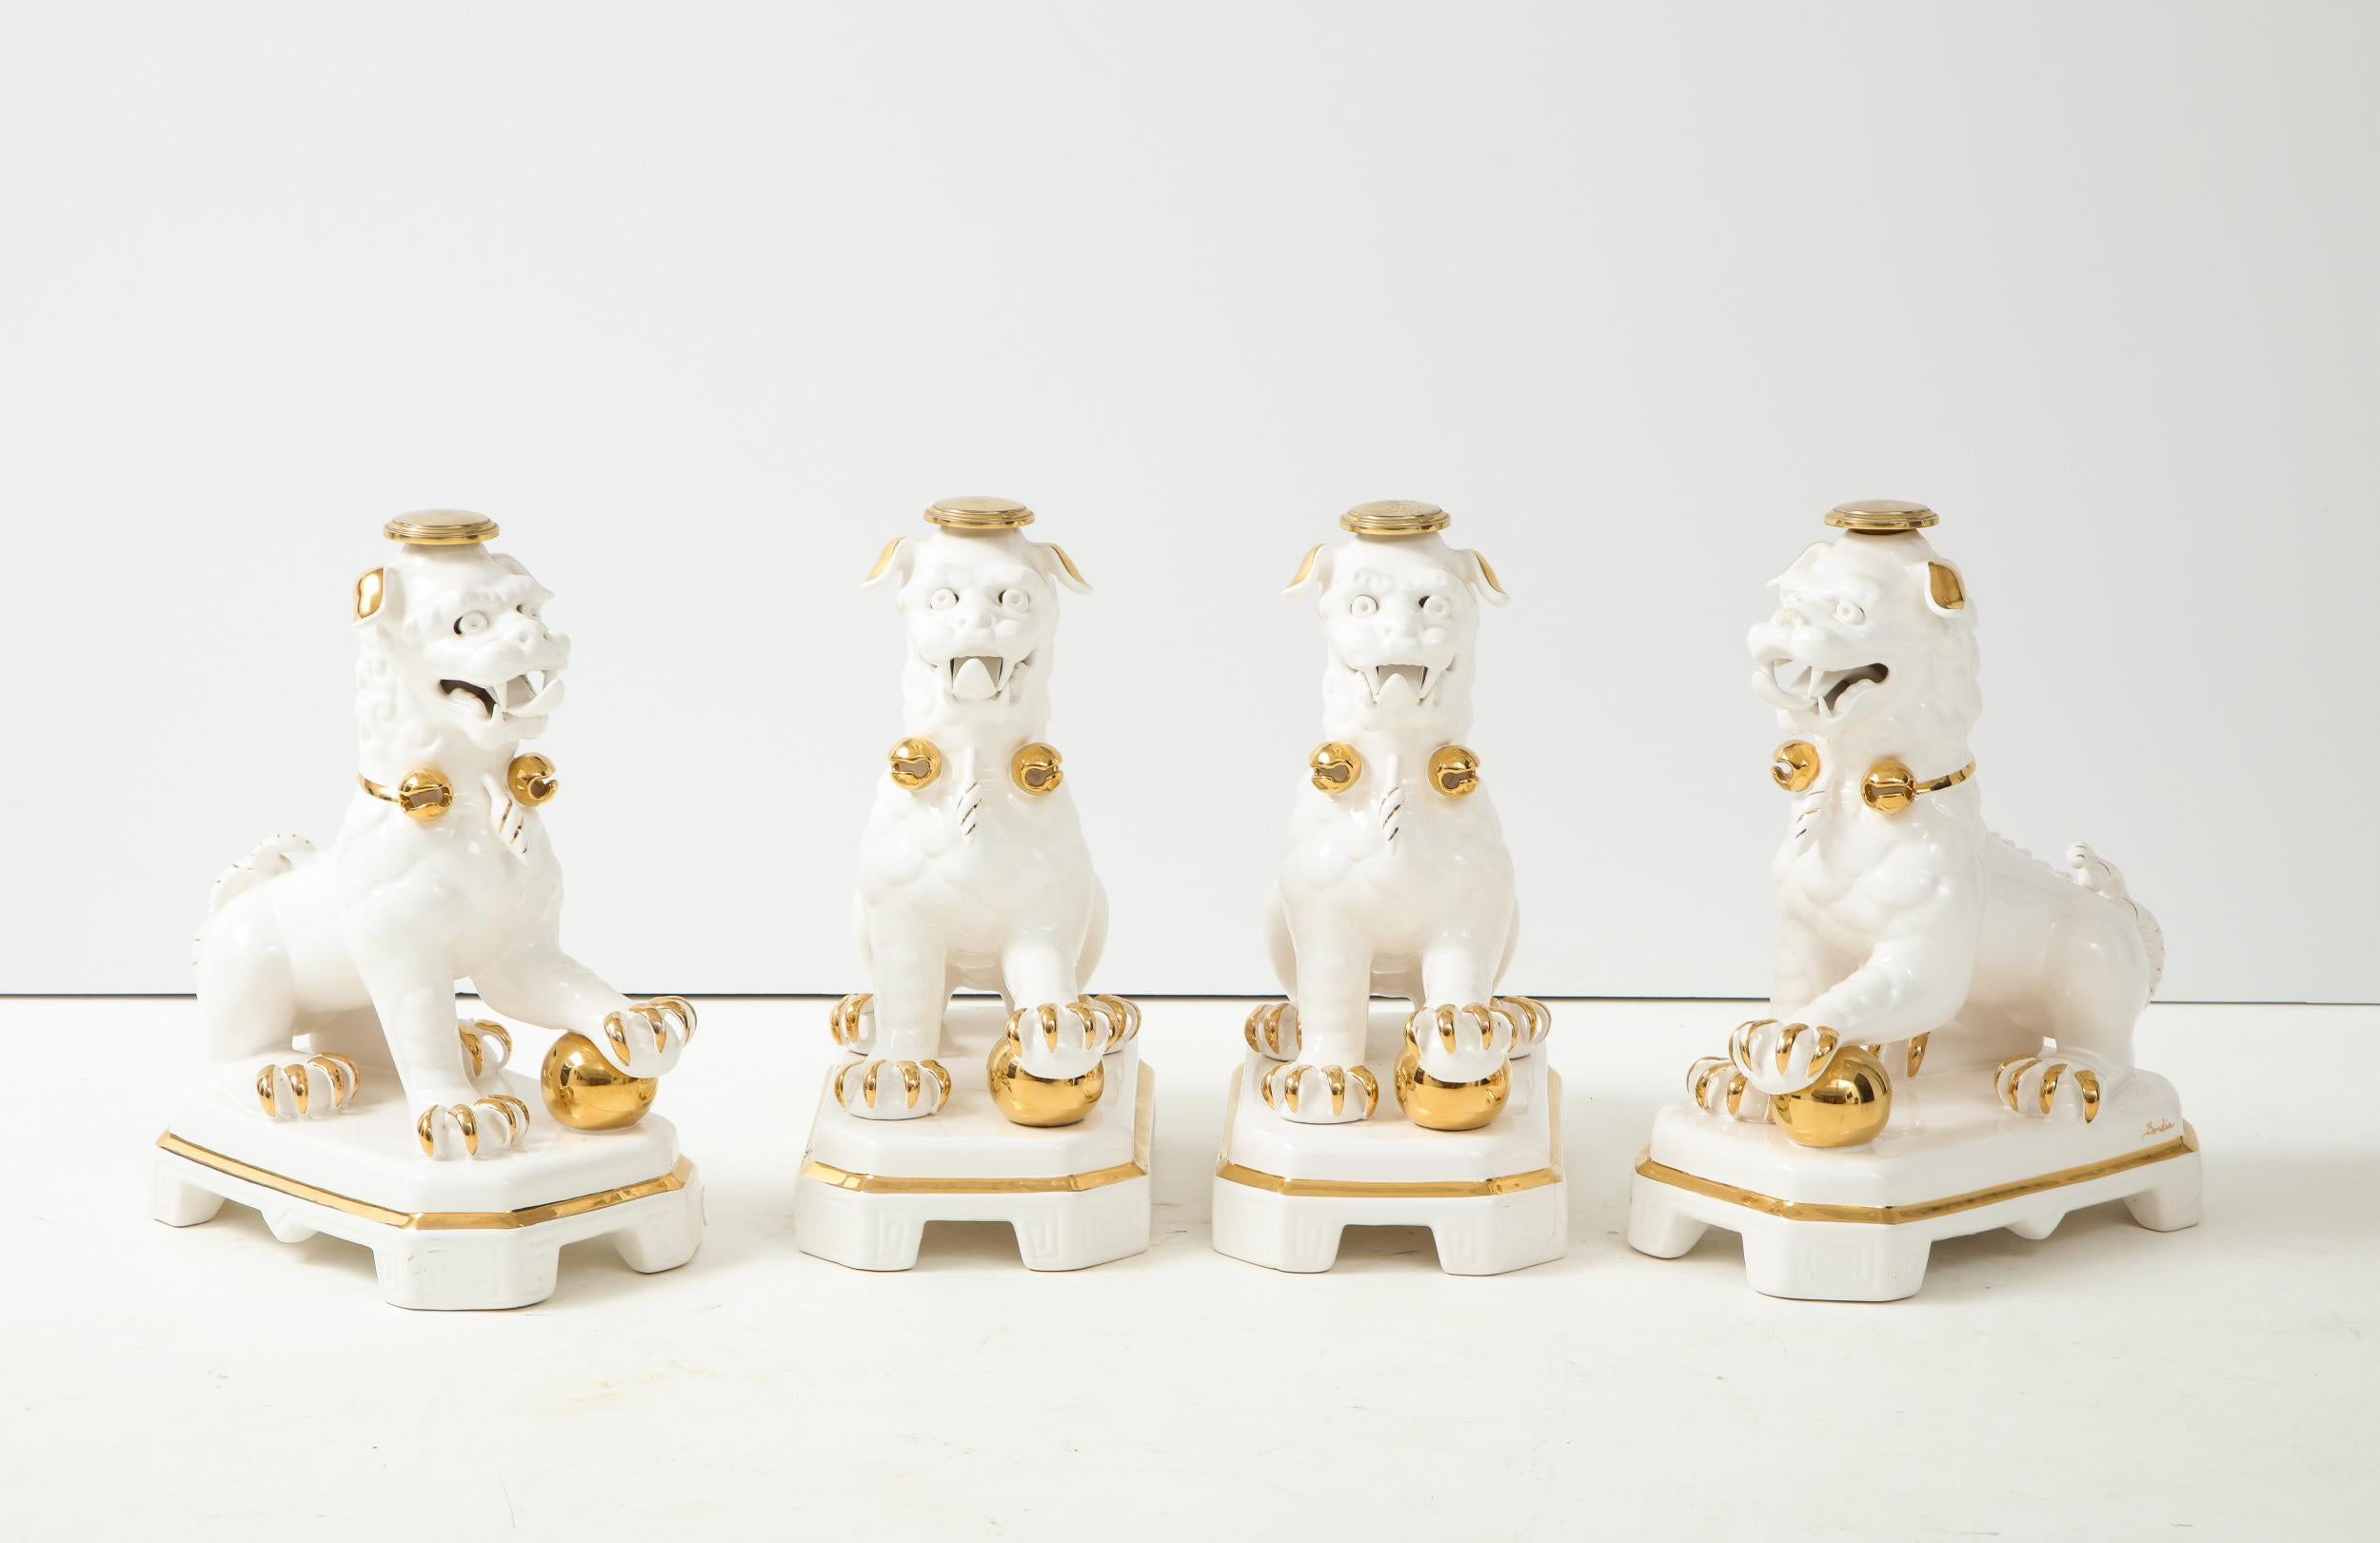 Un ensemble de quatre bases de table Foo Dog en céramique blanche et dorée. Fabriqué en Espagne par Bondia dans le style Hollywood Regency. Sculptures en céramique ornées de visages, de bouches, de corps et de pattes détaillés. Les quatre Foo Dogs